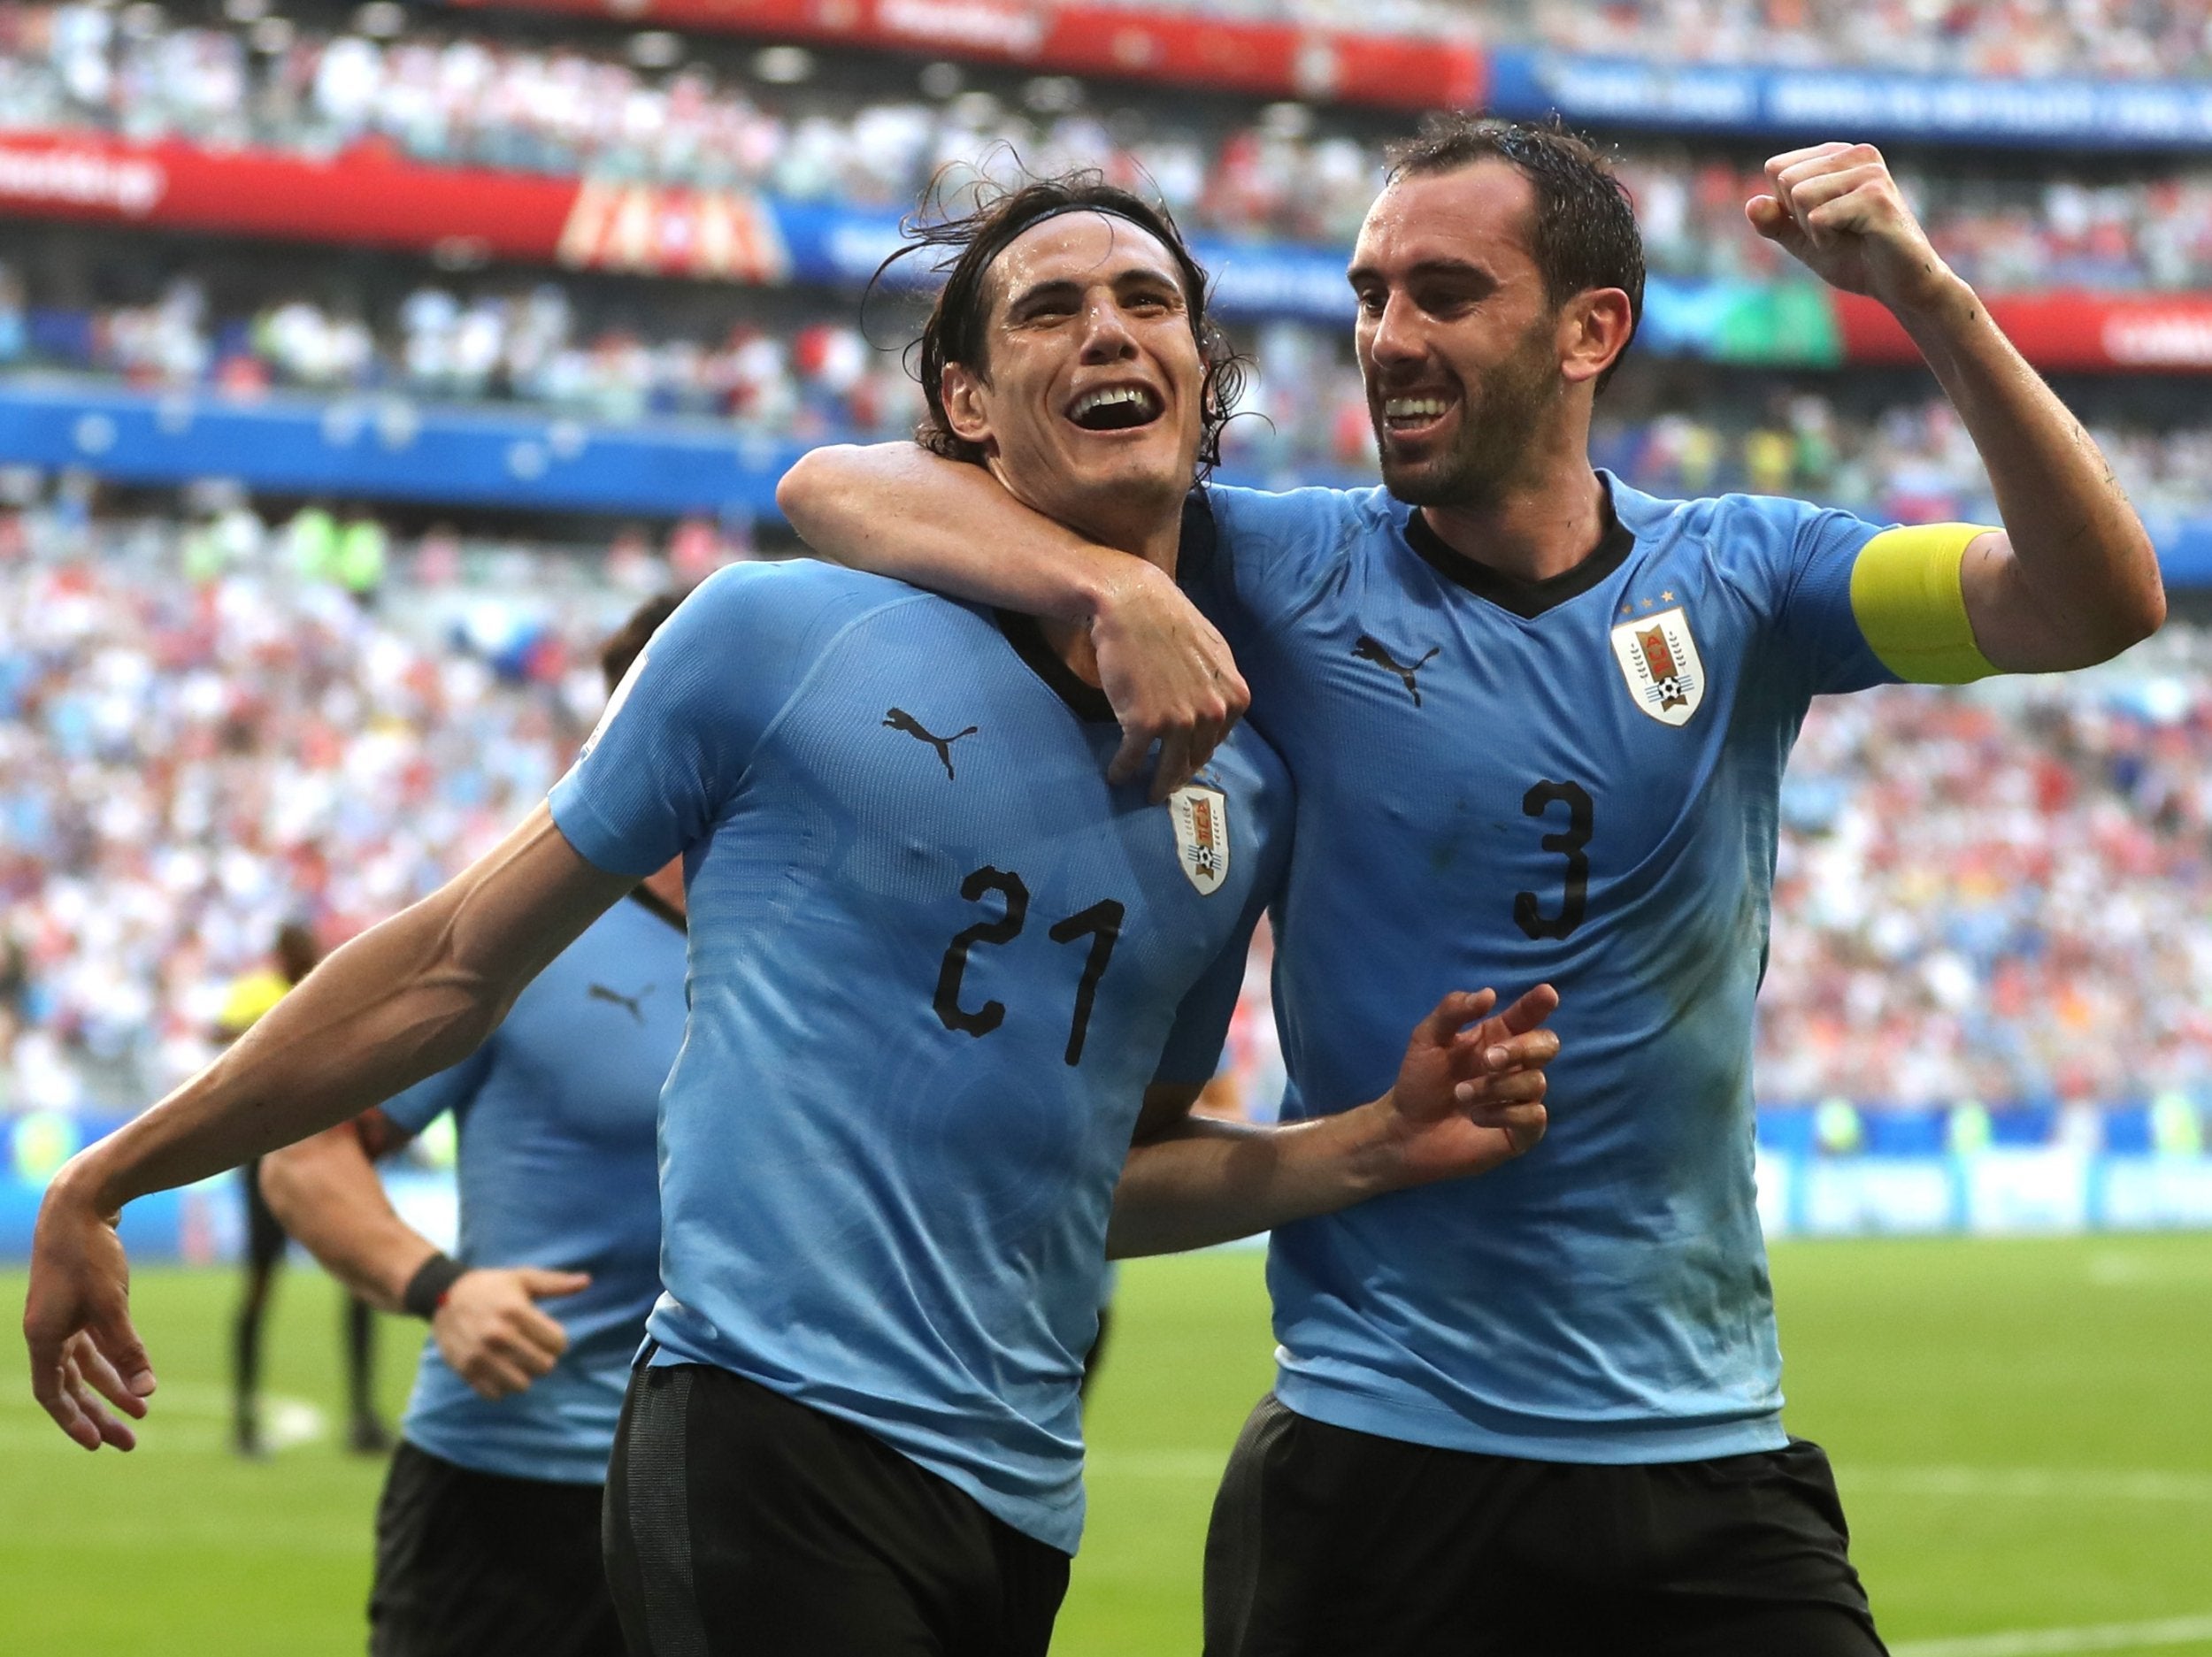 Fotos de Uruguay futbol, Imagens de Uruguay futbol sem royalties